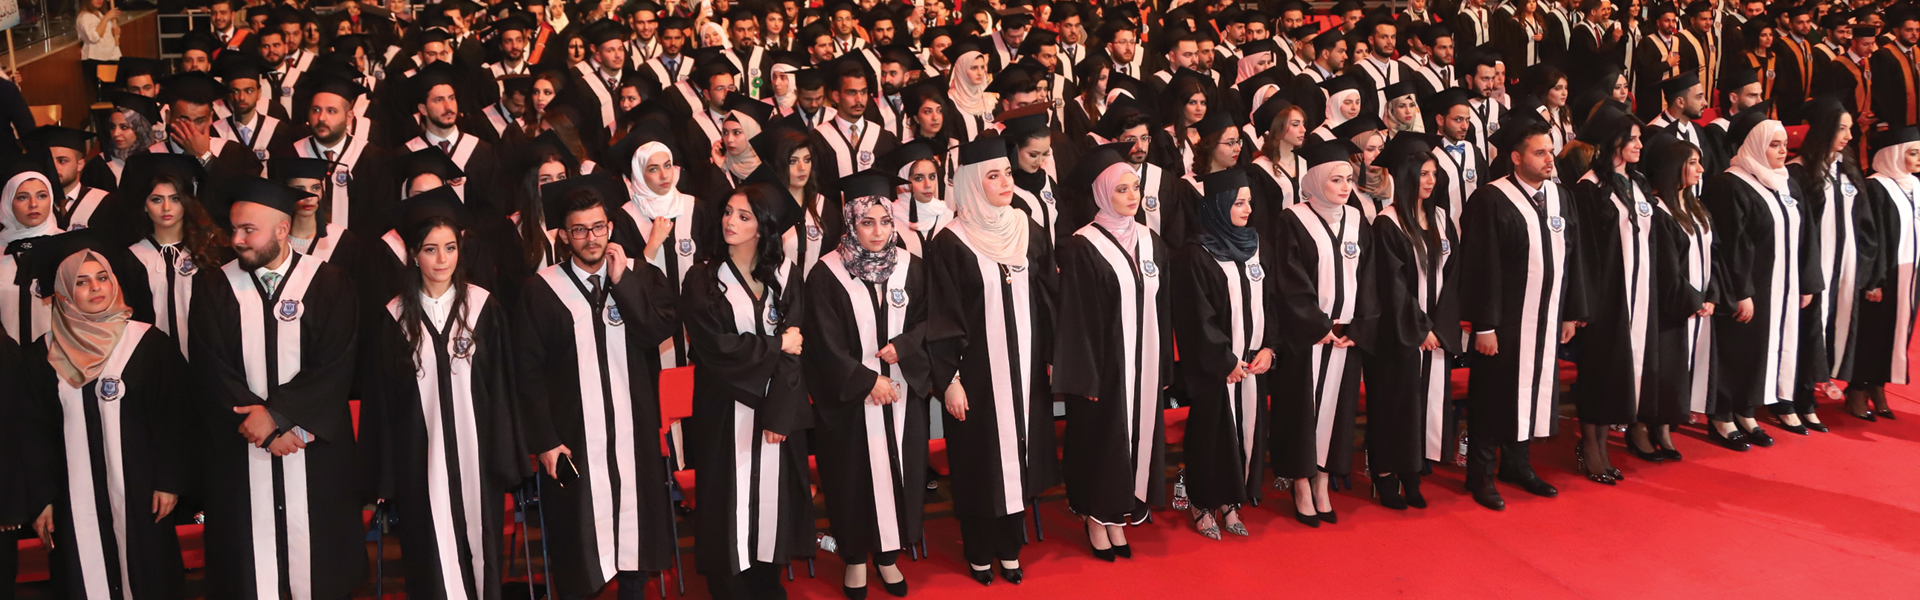 وزيرة الثقافة ترعى أوبريت شعب واحد في جامعة عمان الأهلية